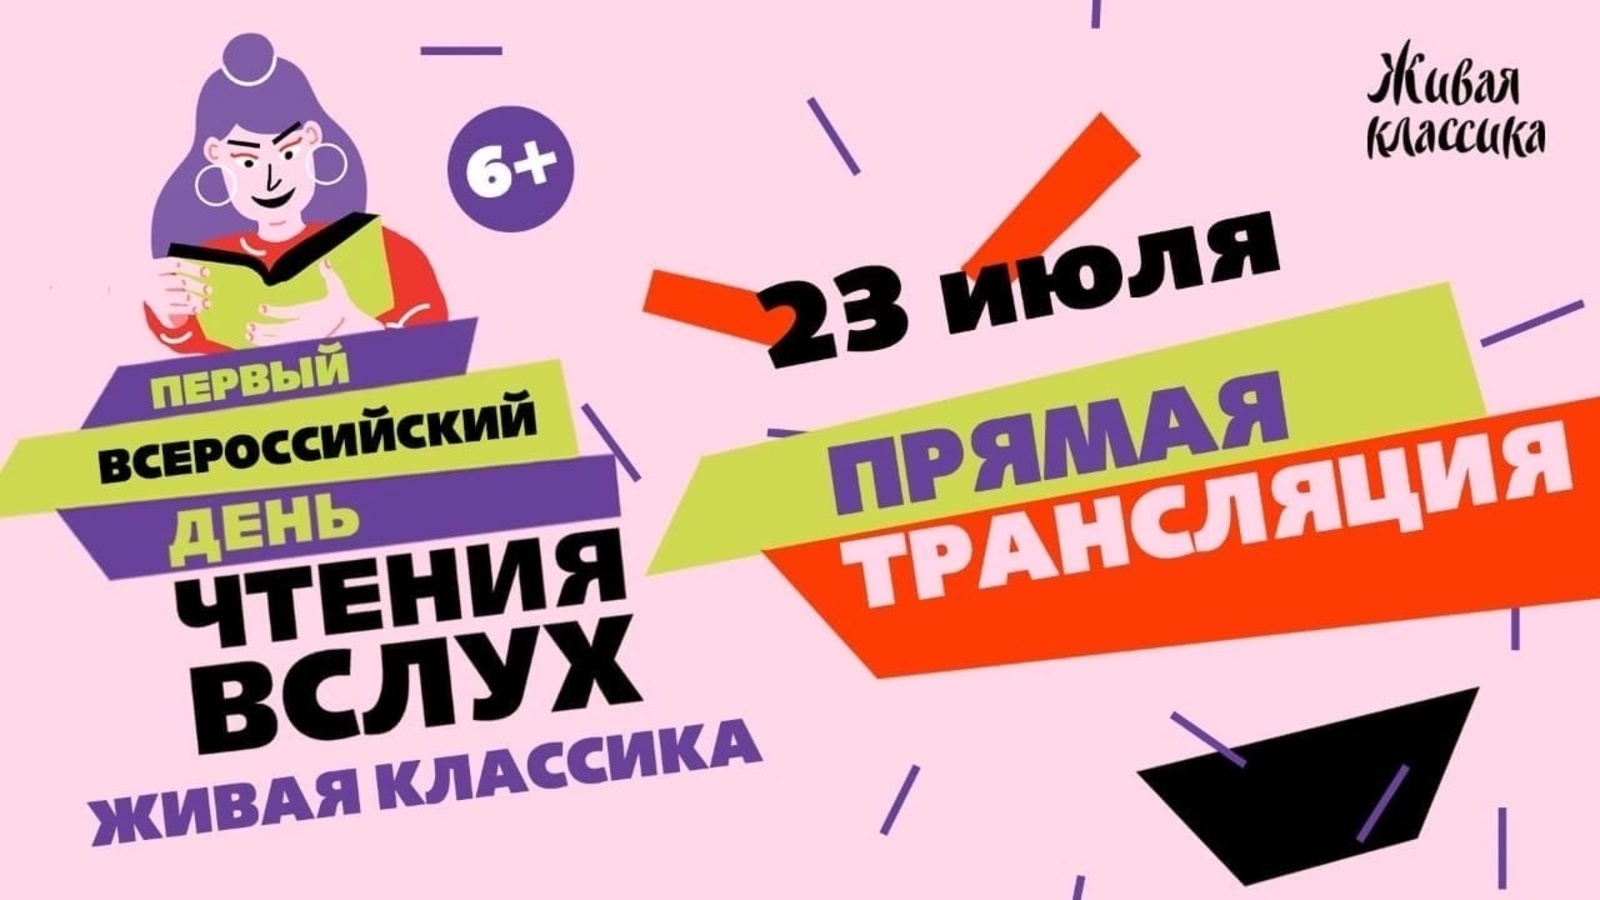 В Уфе пройдет Всероссийский день чтения вслух